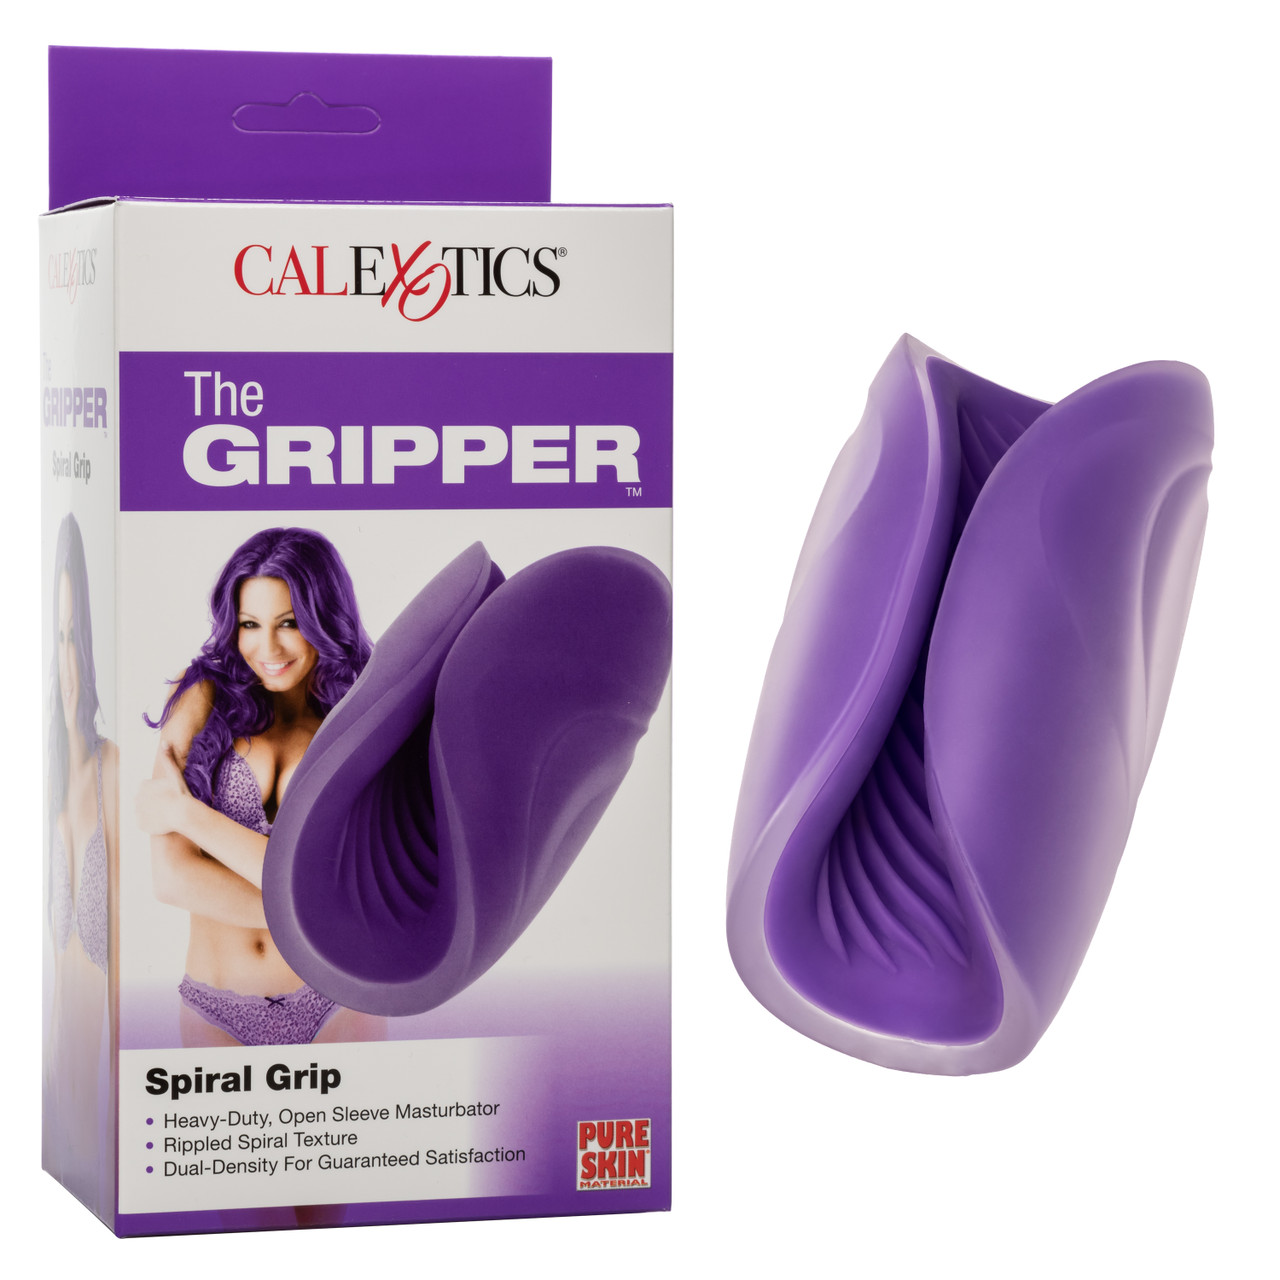 Рельефный мастурбатор CalExotics The Gripper Spiral Grip, фиолетовый